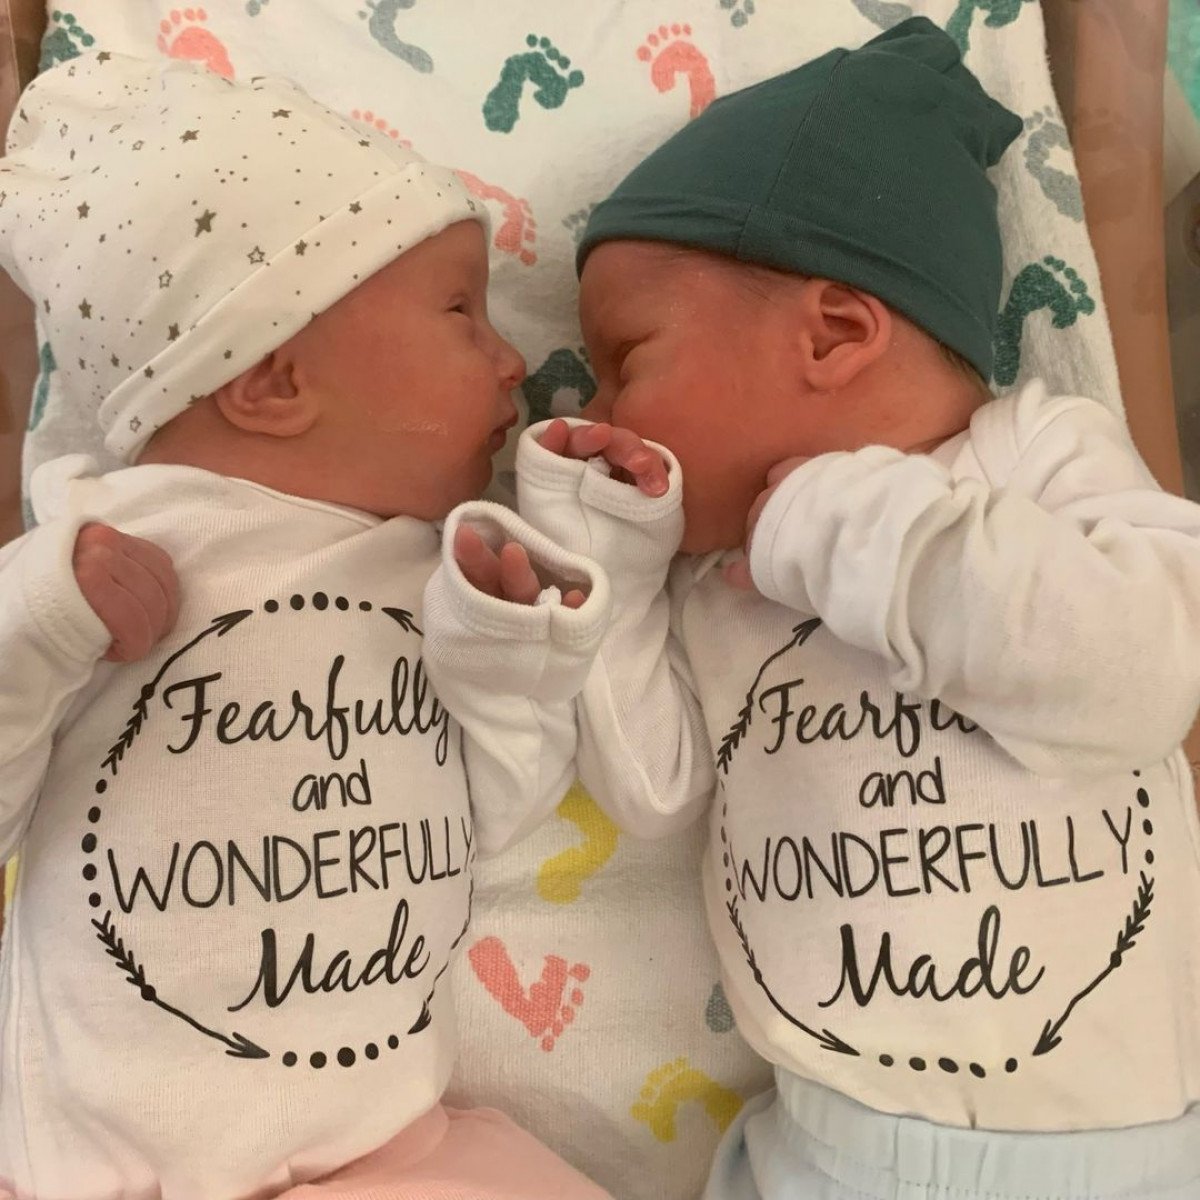 ABD de, 30 yıl önce dondurulan embriyolardan ikiz bebekler dünyaya geldi #1